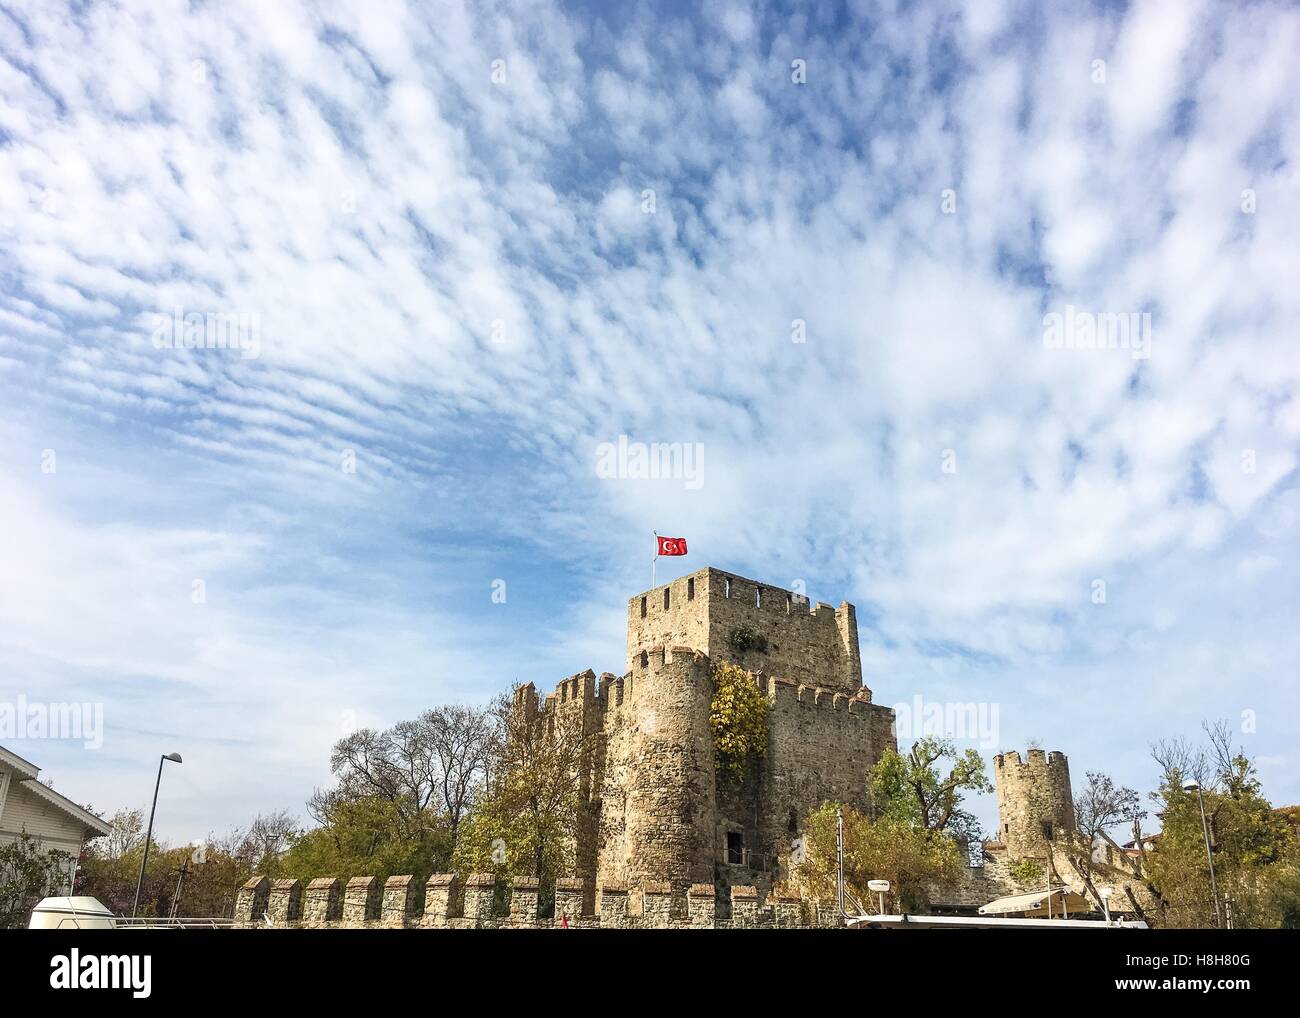 Castillo de Anatolia (Anadolu Hisari) en Estambul.históricamente conocido como Guzelce Hisar (significado correcto Castle) es una fortaleza situada en Anatolia (Asia) s Foto de stock